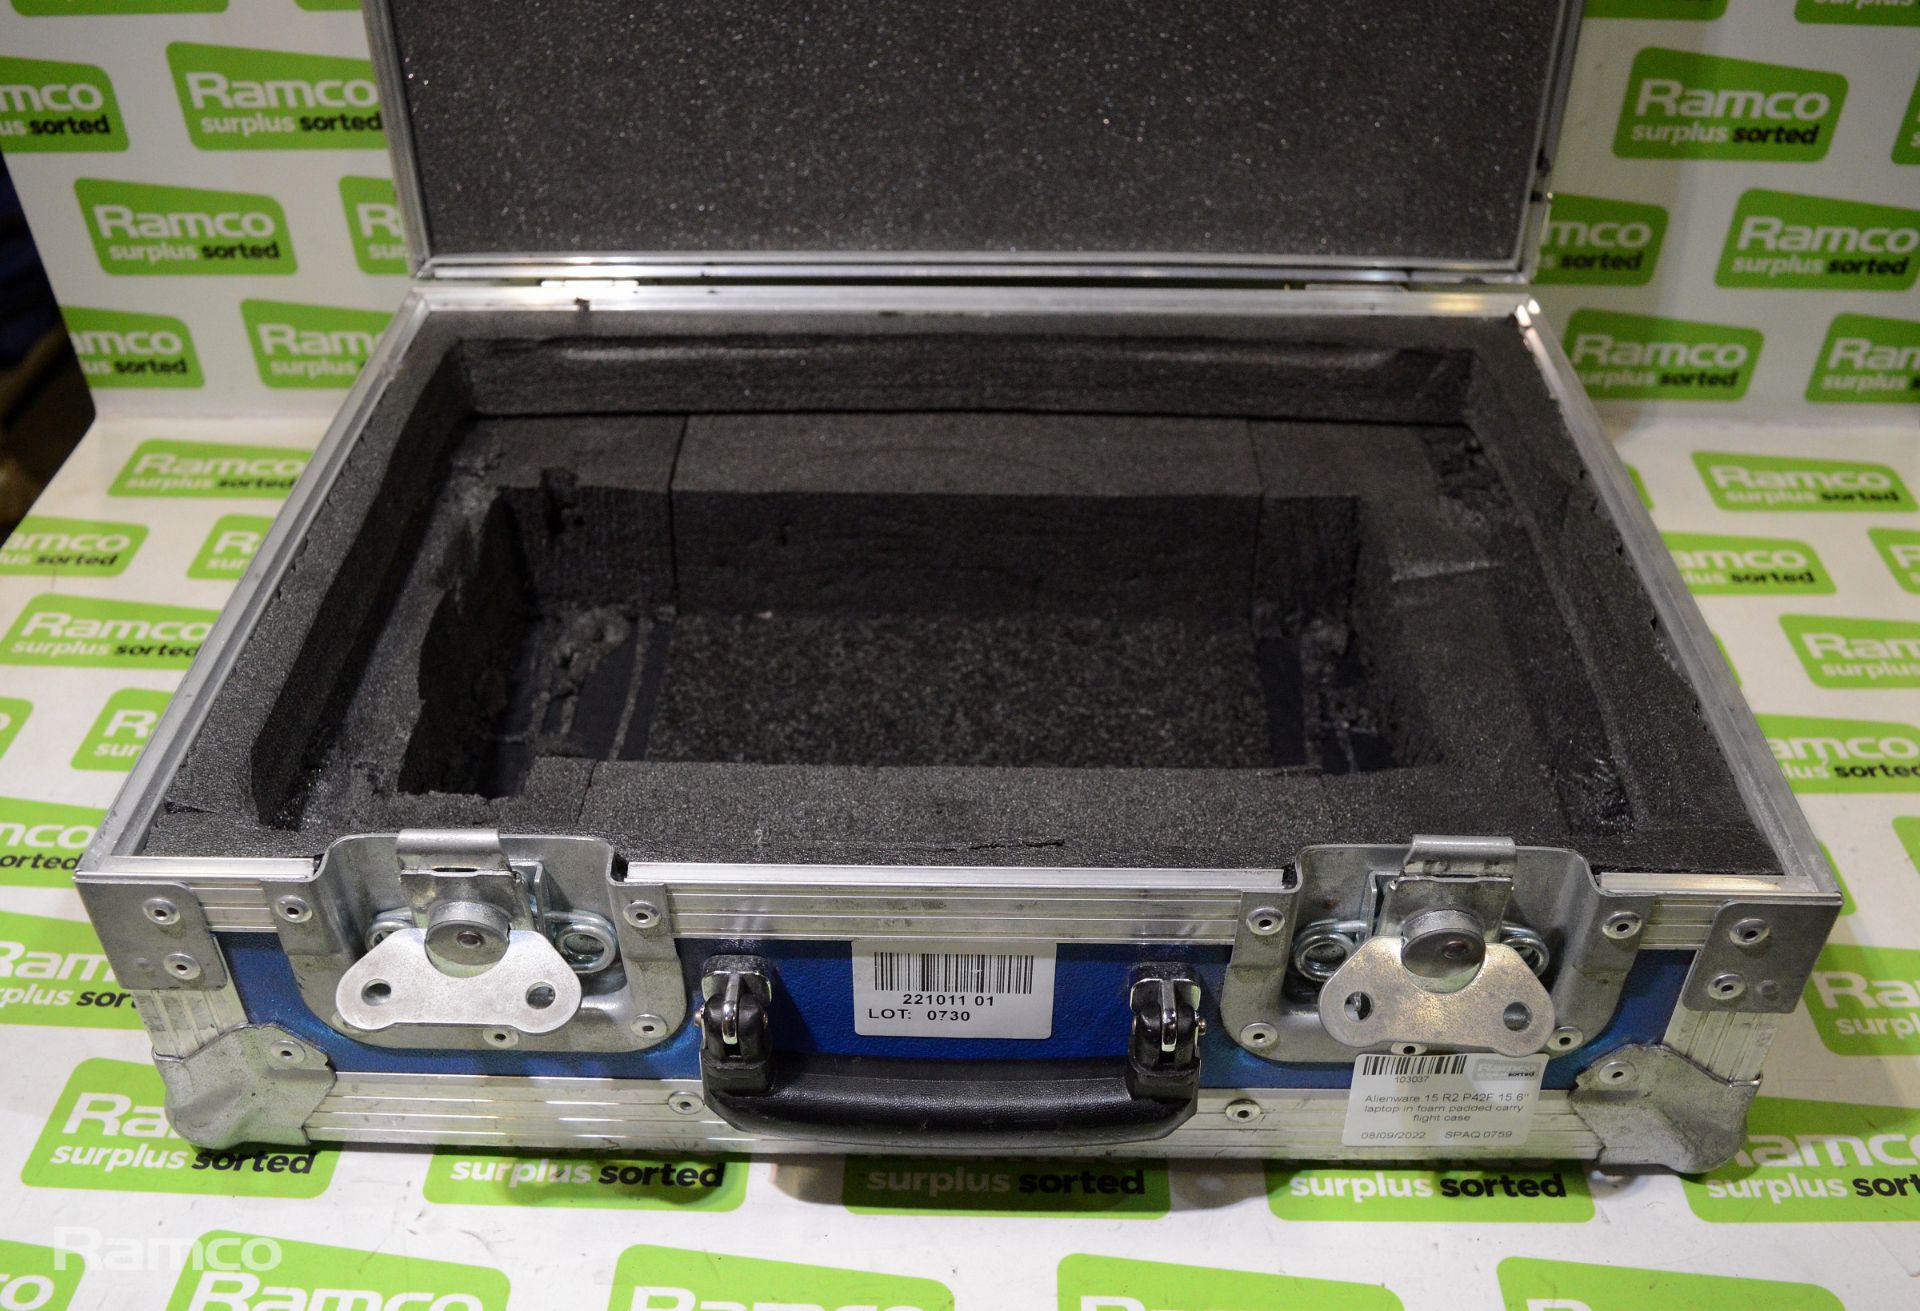 Alienware 15 R2 P42F 15.6" laptop in foam padded carry flight case - Image 3 of 5